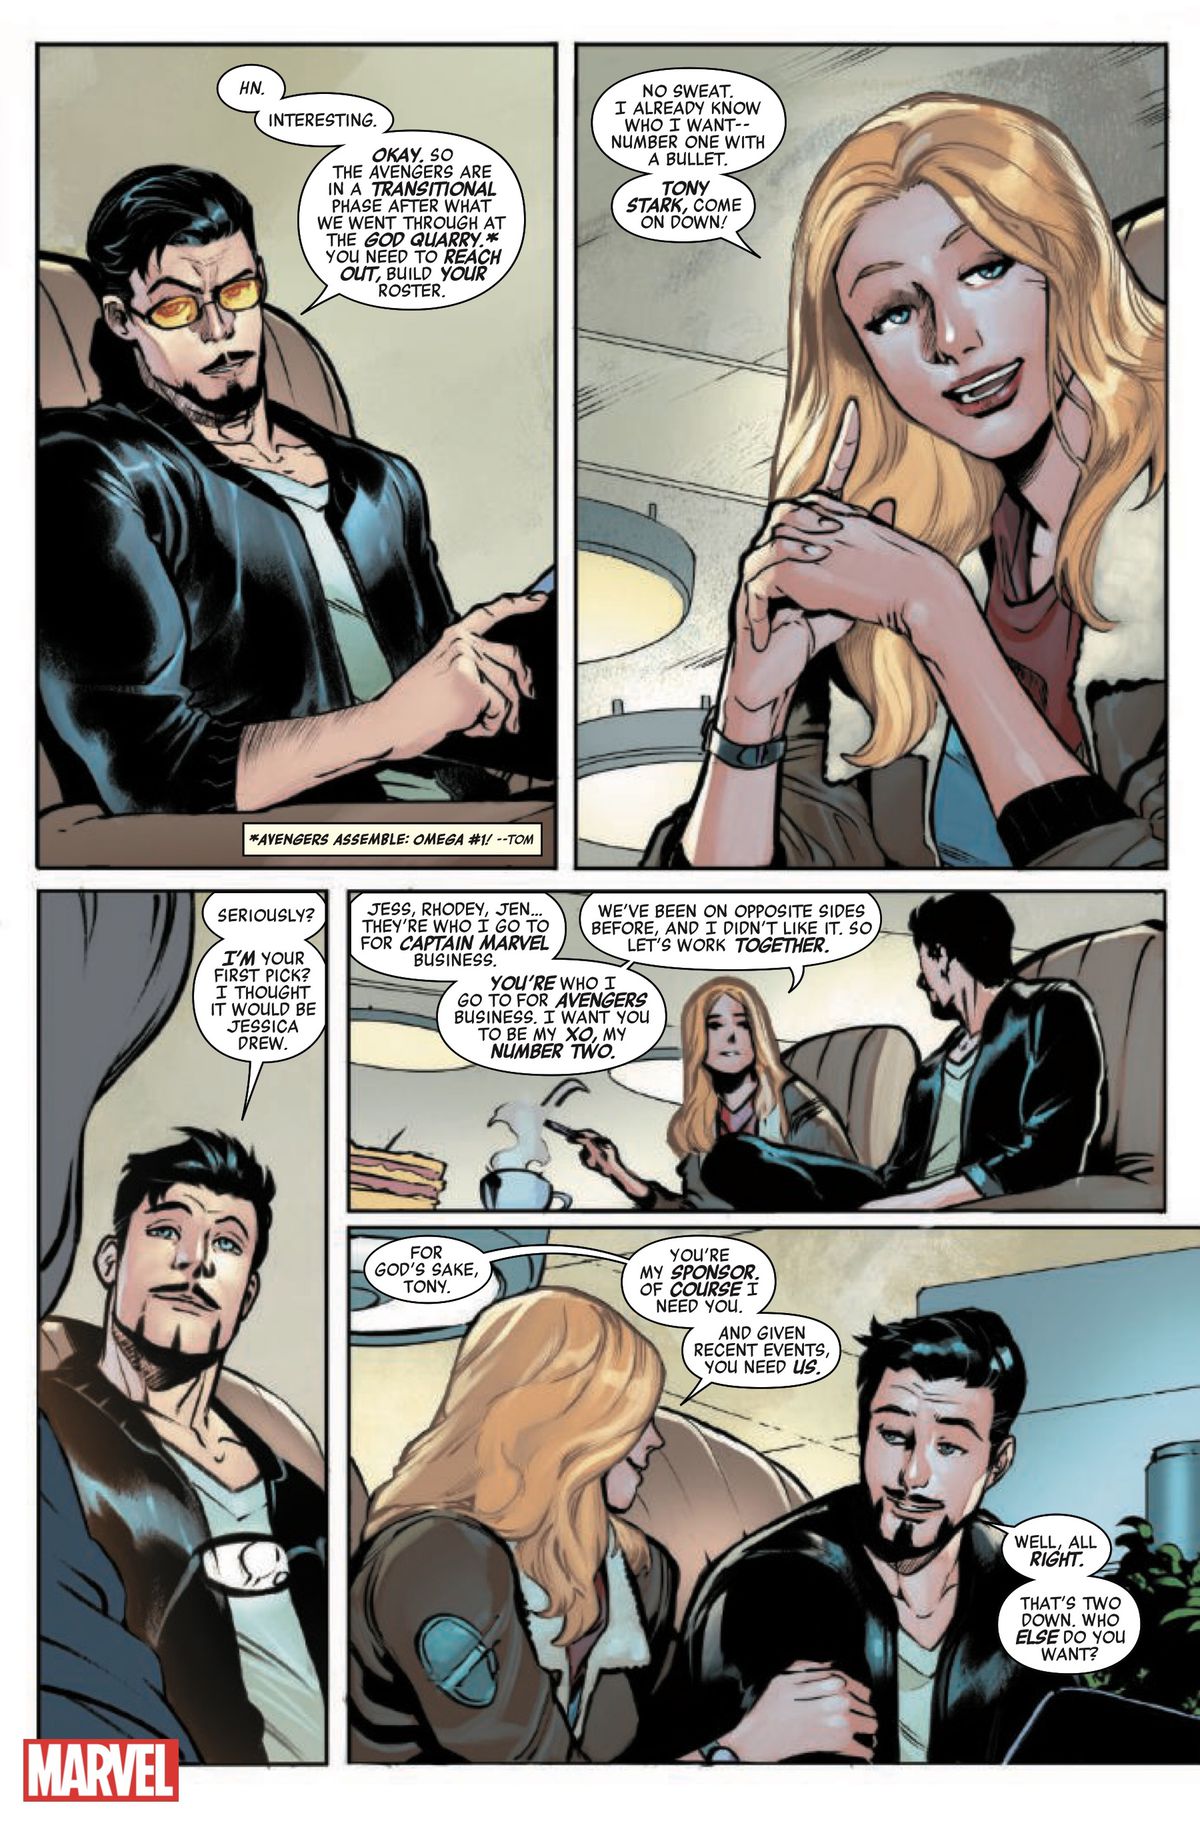 Tony Stark säger till Carol Danvers att hon måste välja sin Avengers-lista.  Hon säger till honom att hon vill ha honom som sin XO.  Han håller med och frågar: 